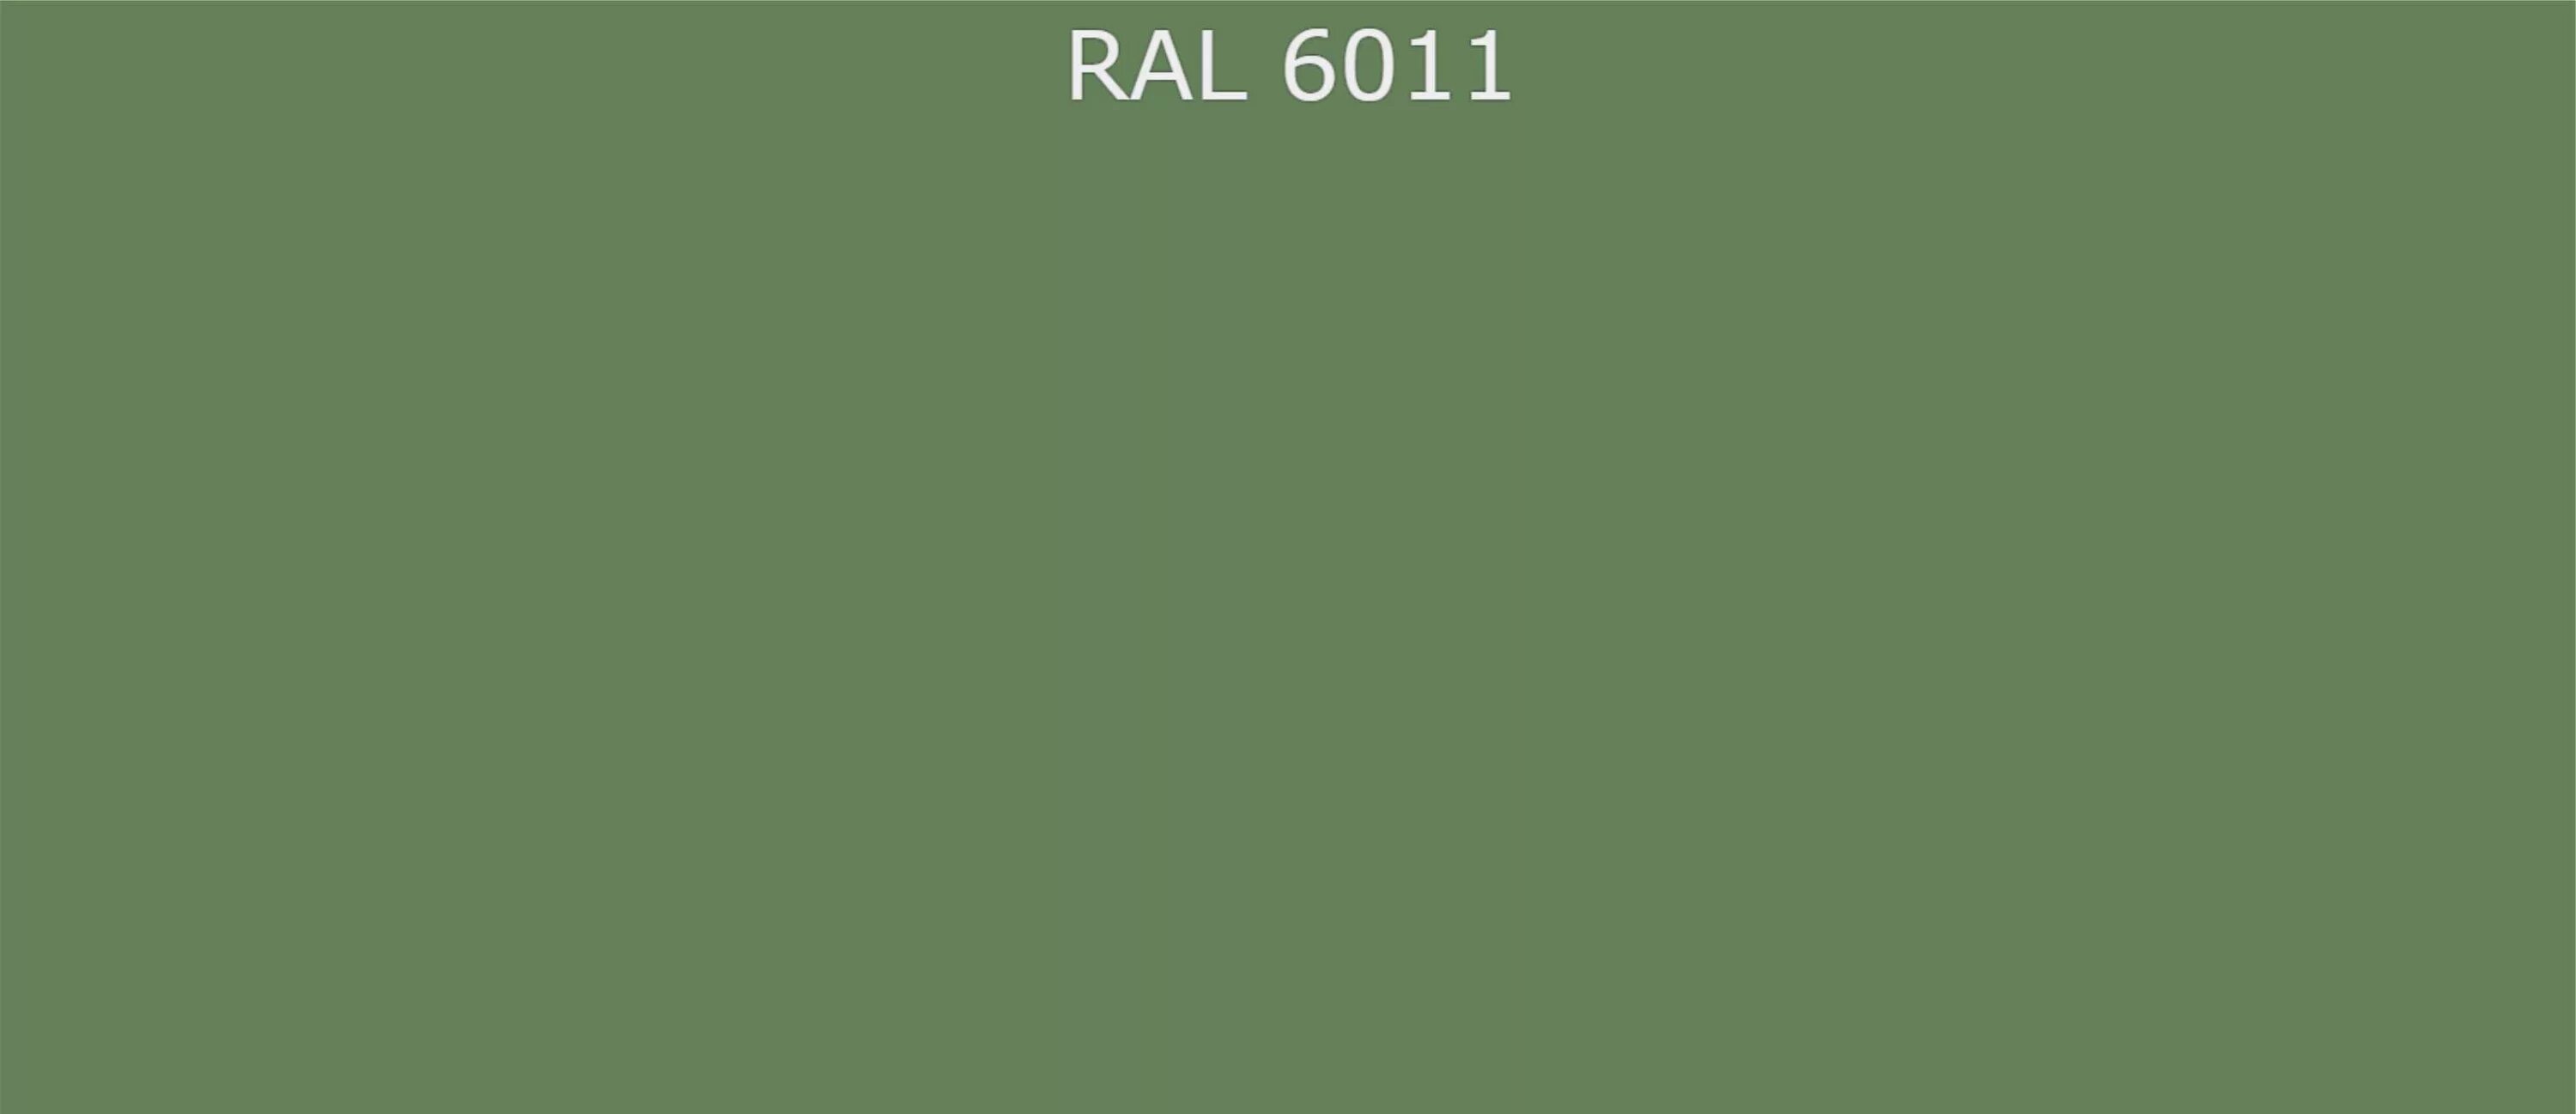 Читать рал 6. RAL 6011 цвет. RAL 6011 краска. Палитра RAL 6011 Резедово зеленый. RAL 6011 Резедово-зелёный.